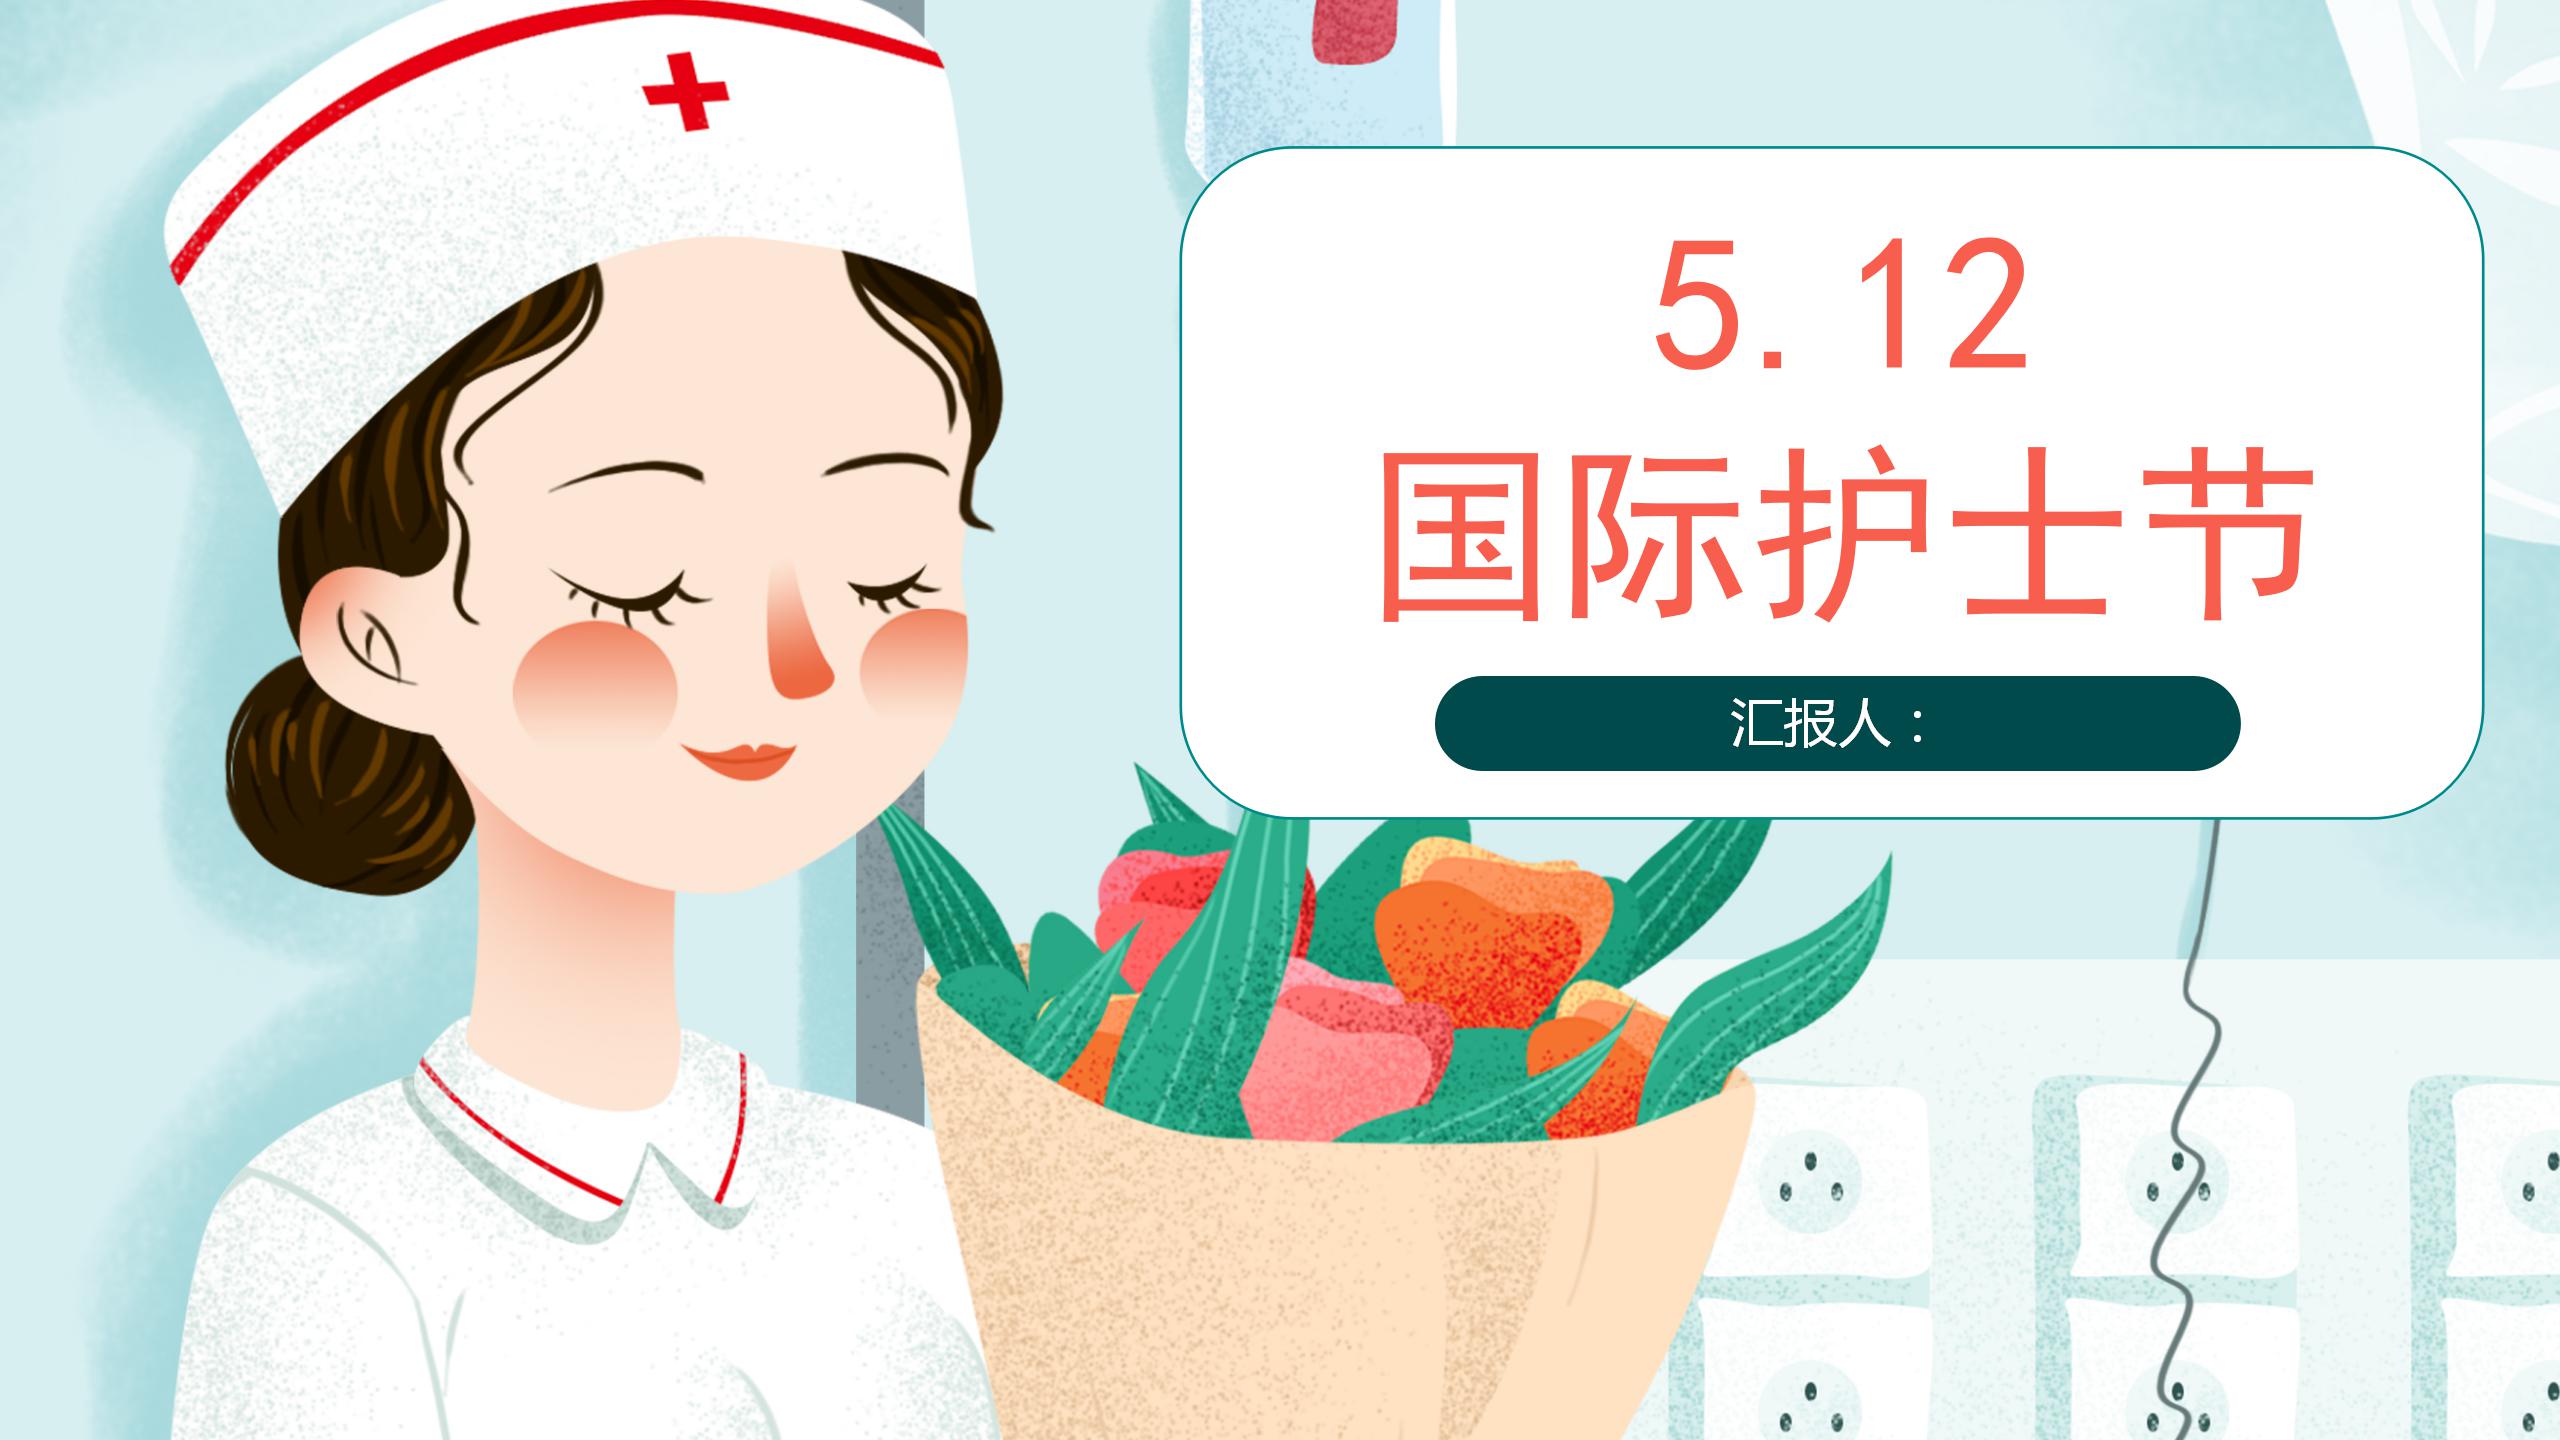 简约清新国际护士节海报设计启动页gif动图下载-包图网